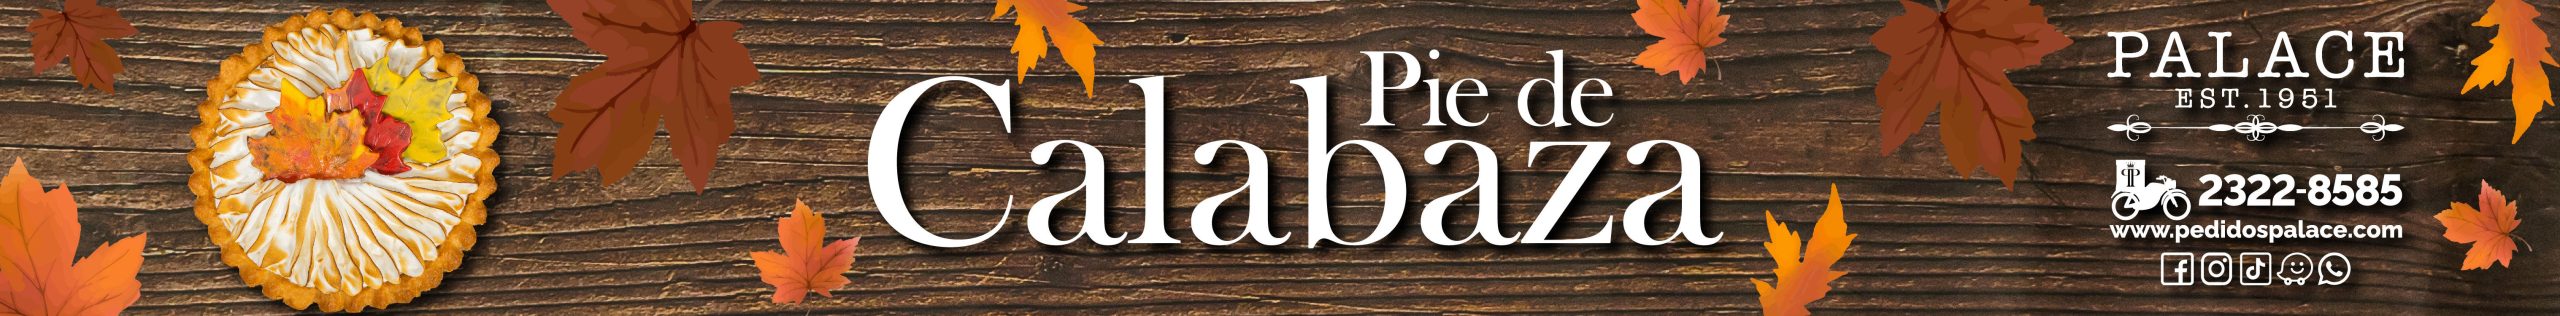 Pasteleria Palace ahora a domicilio - Pastel de Calabaza - Disponible por temporada